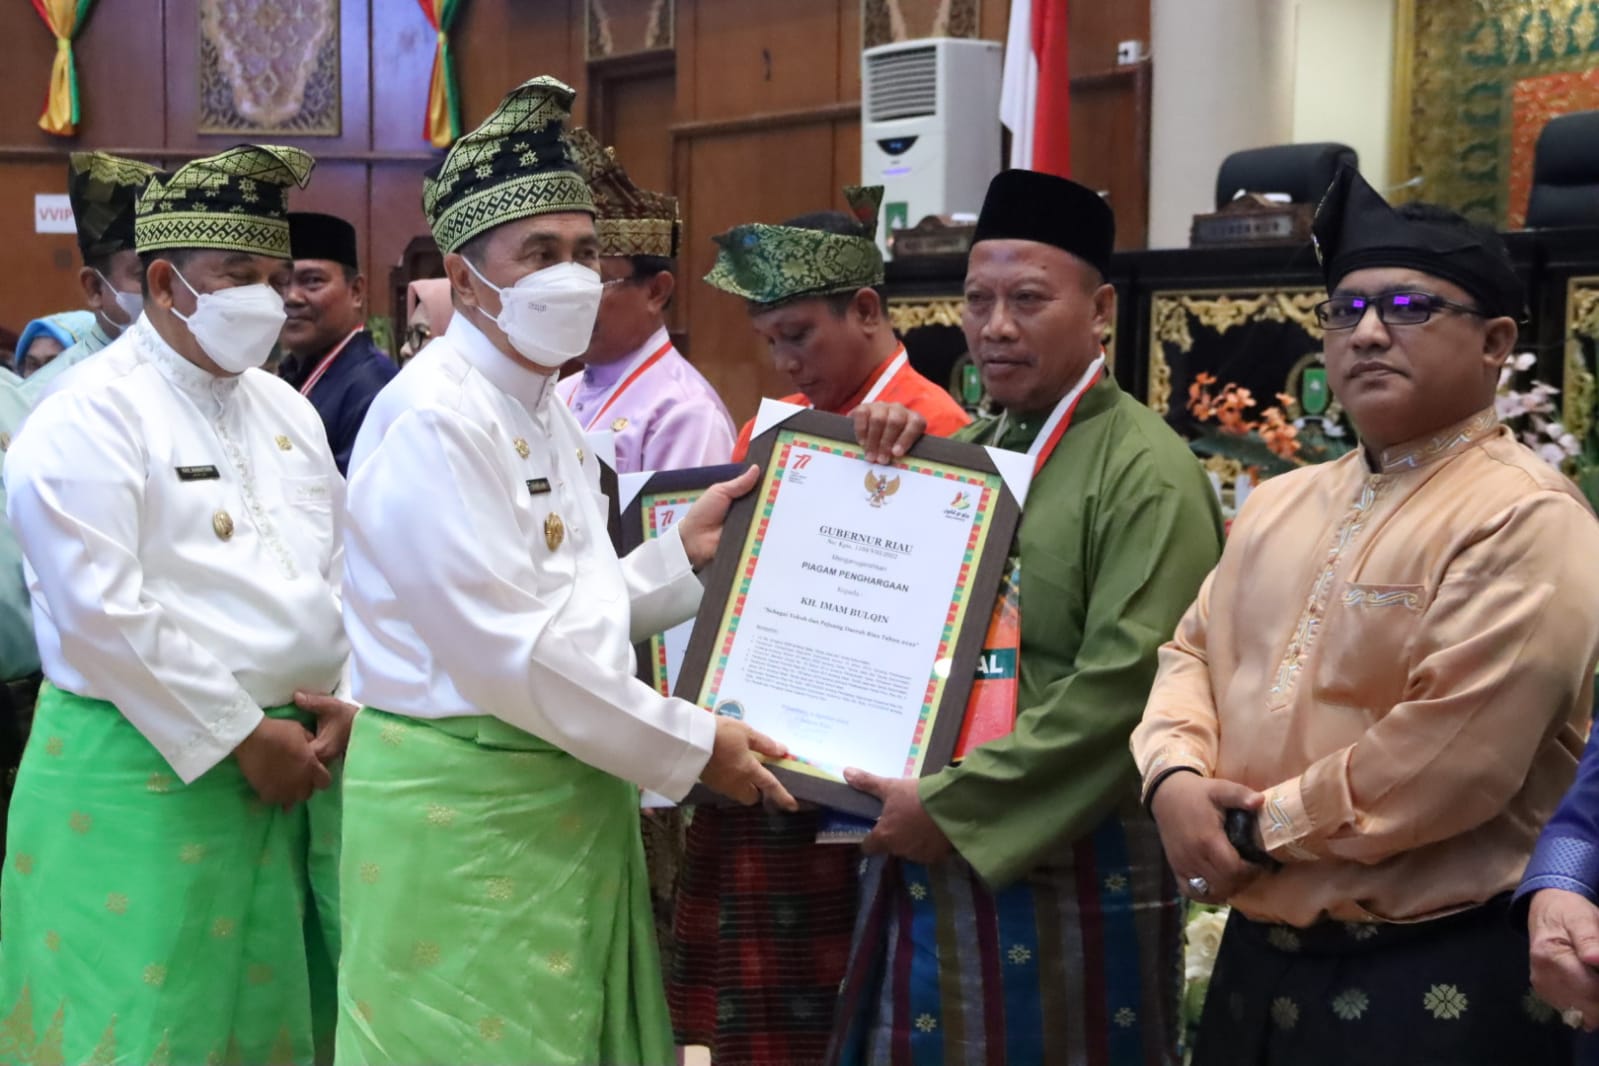 Tokoh Asal Bengkalis Ditetapkan sebagai Pahlawan Daerah Riau